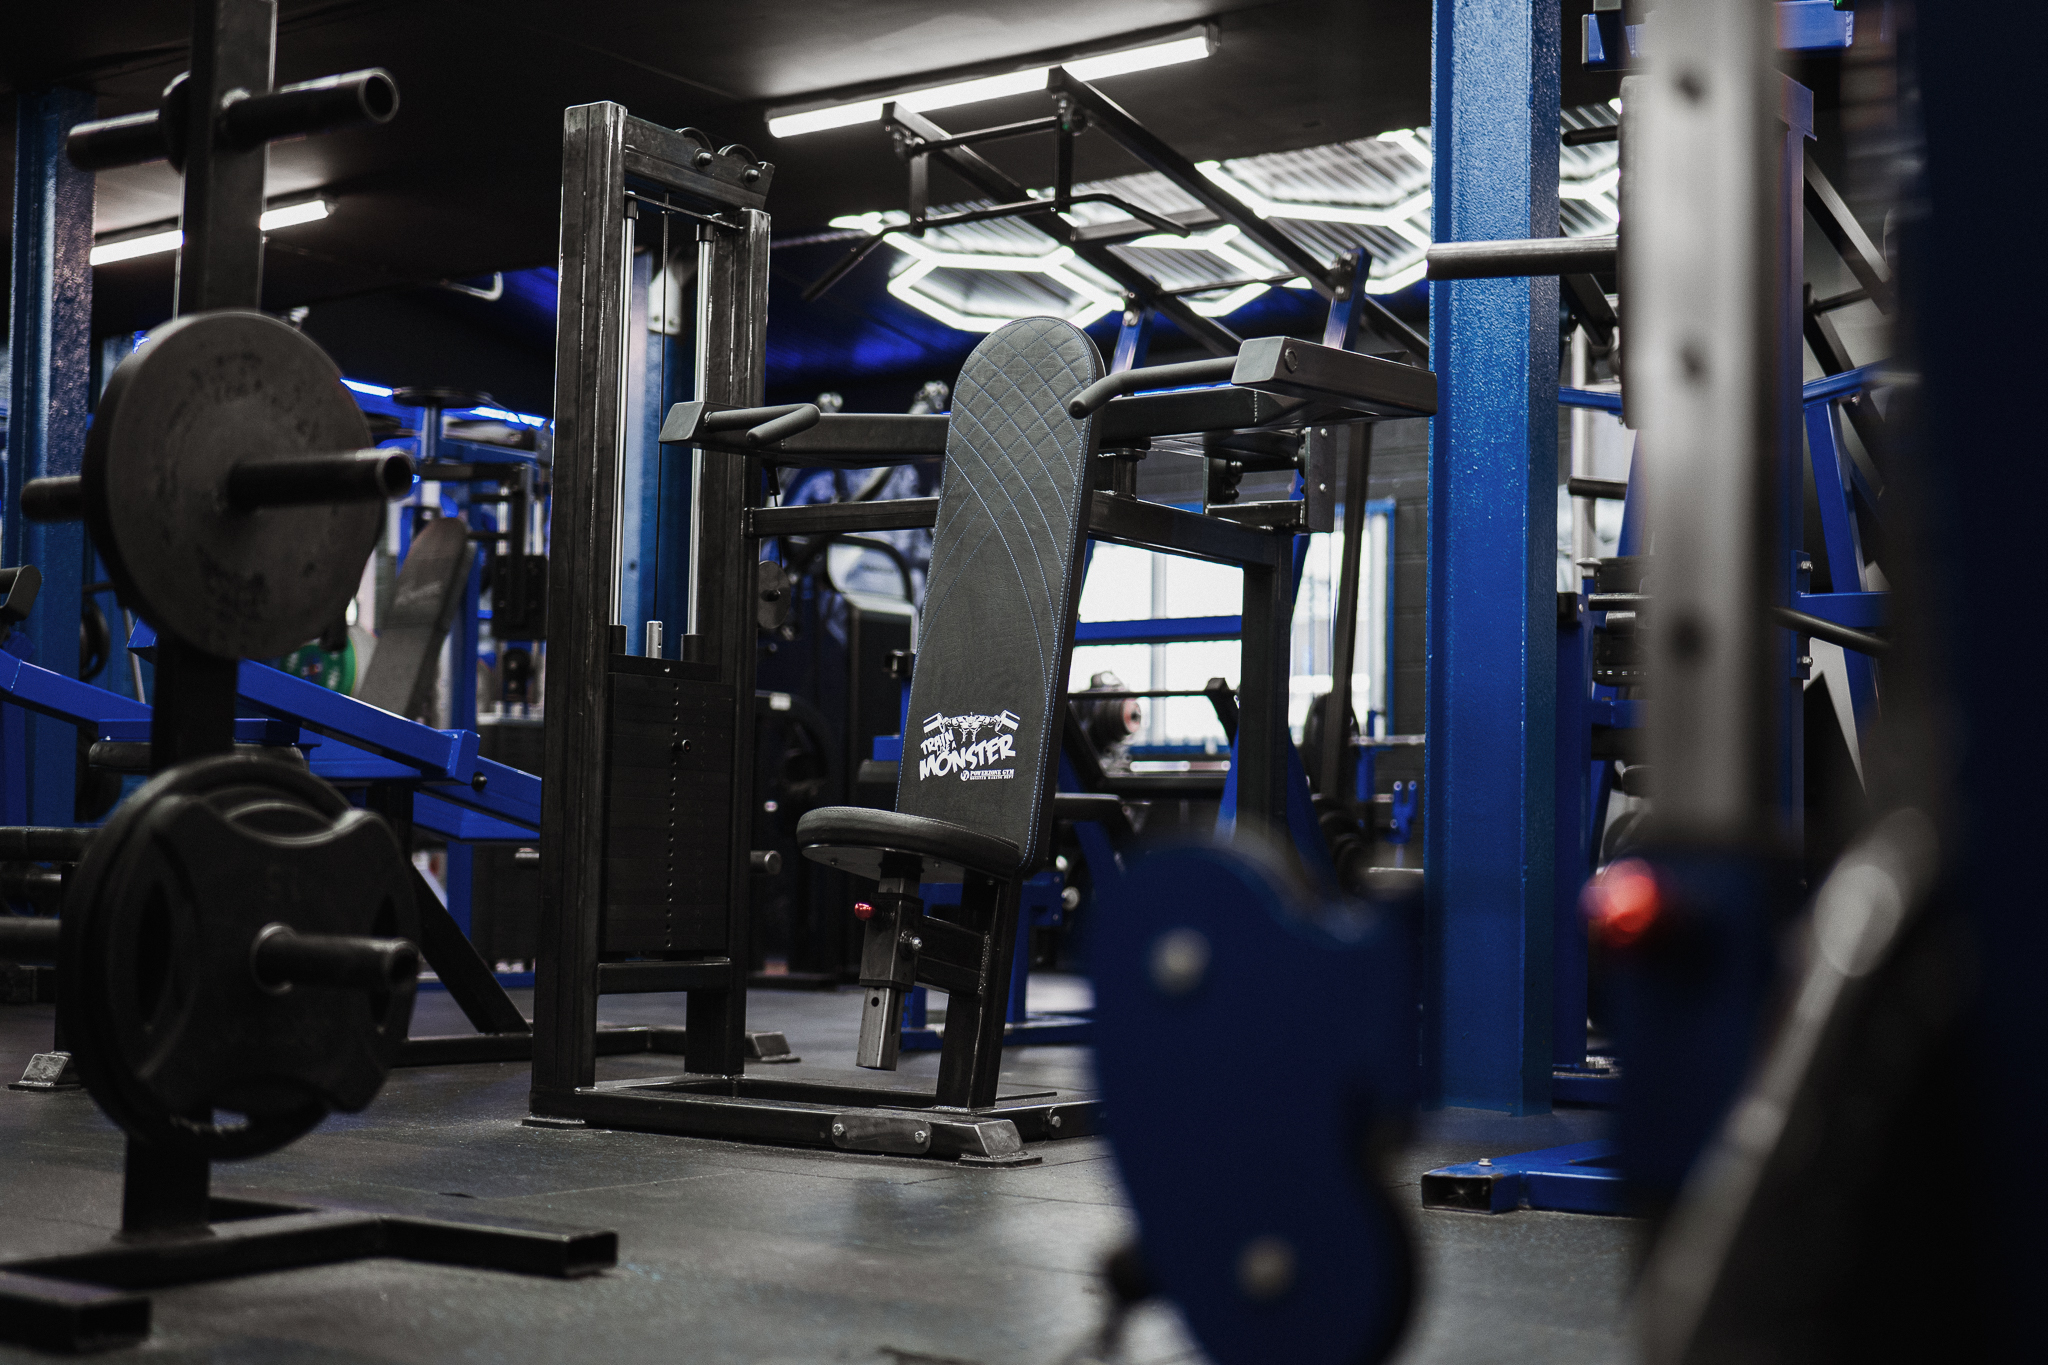 Powerzone Gym – Train Like A Monster